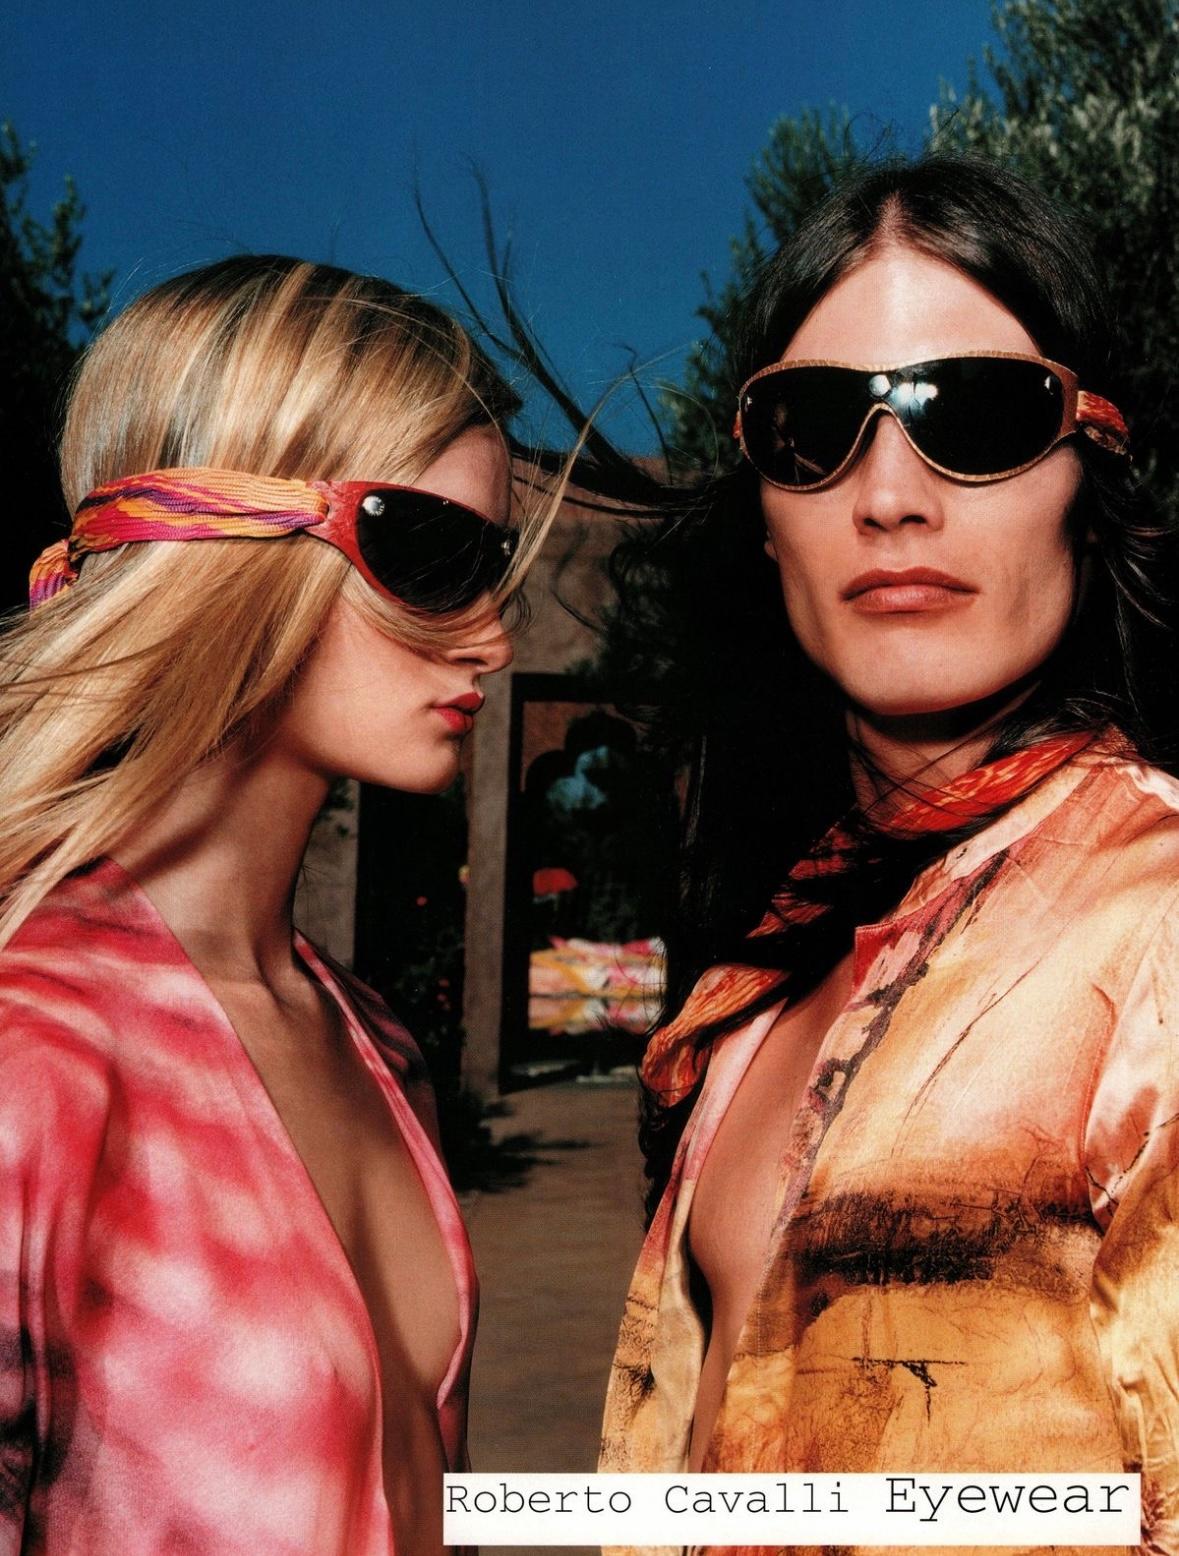 Issues de la collection printemps/été 2001, des lunettes de soleil similaires à ces lunettes de soleil bouclier bleu clair Roberto Cavalli ont été mises en avant dans la campagne publicitaire de la saison. Ces lunettes de soleil uniques sont dotées